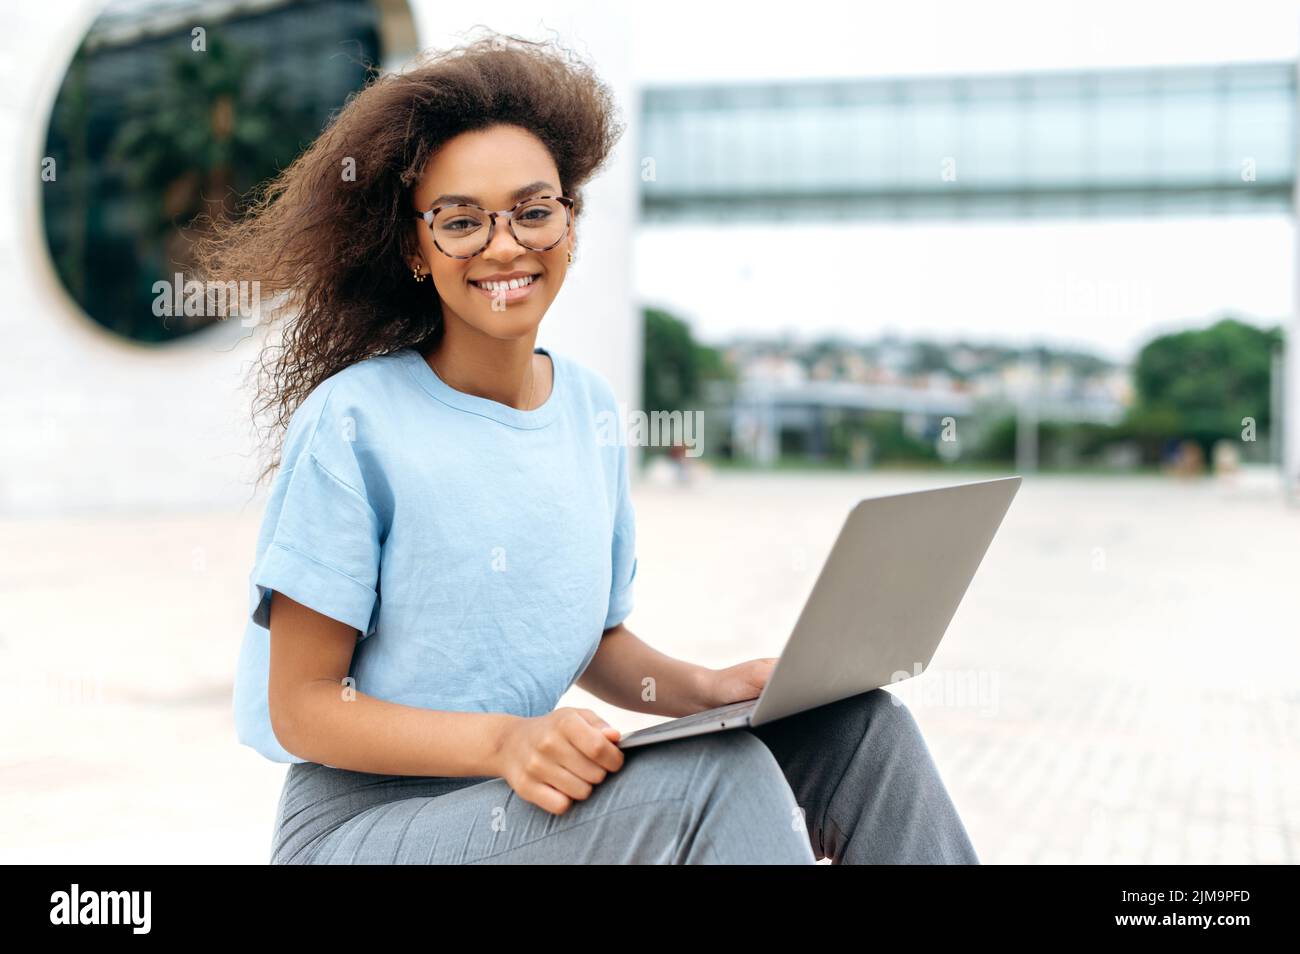 Ritratto di una giovane donna d'affari afroamericana elegante e moderna con occhiali, ceo azienda, freelance, studentessa femminile, seduta con laptop all'aperto, guardando la macchina fotografica, sorridente amichevole Foto Stock